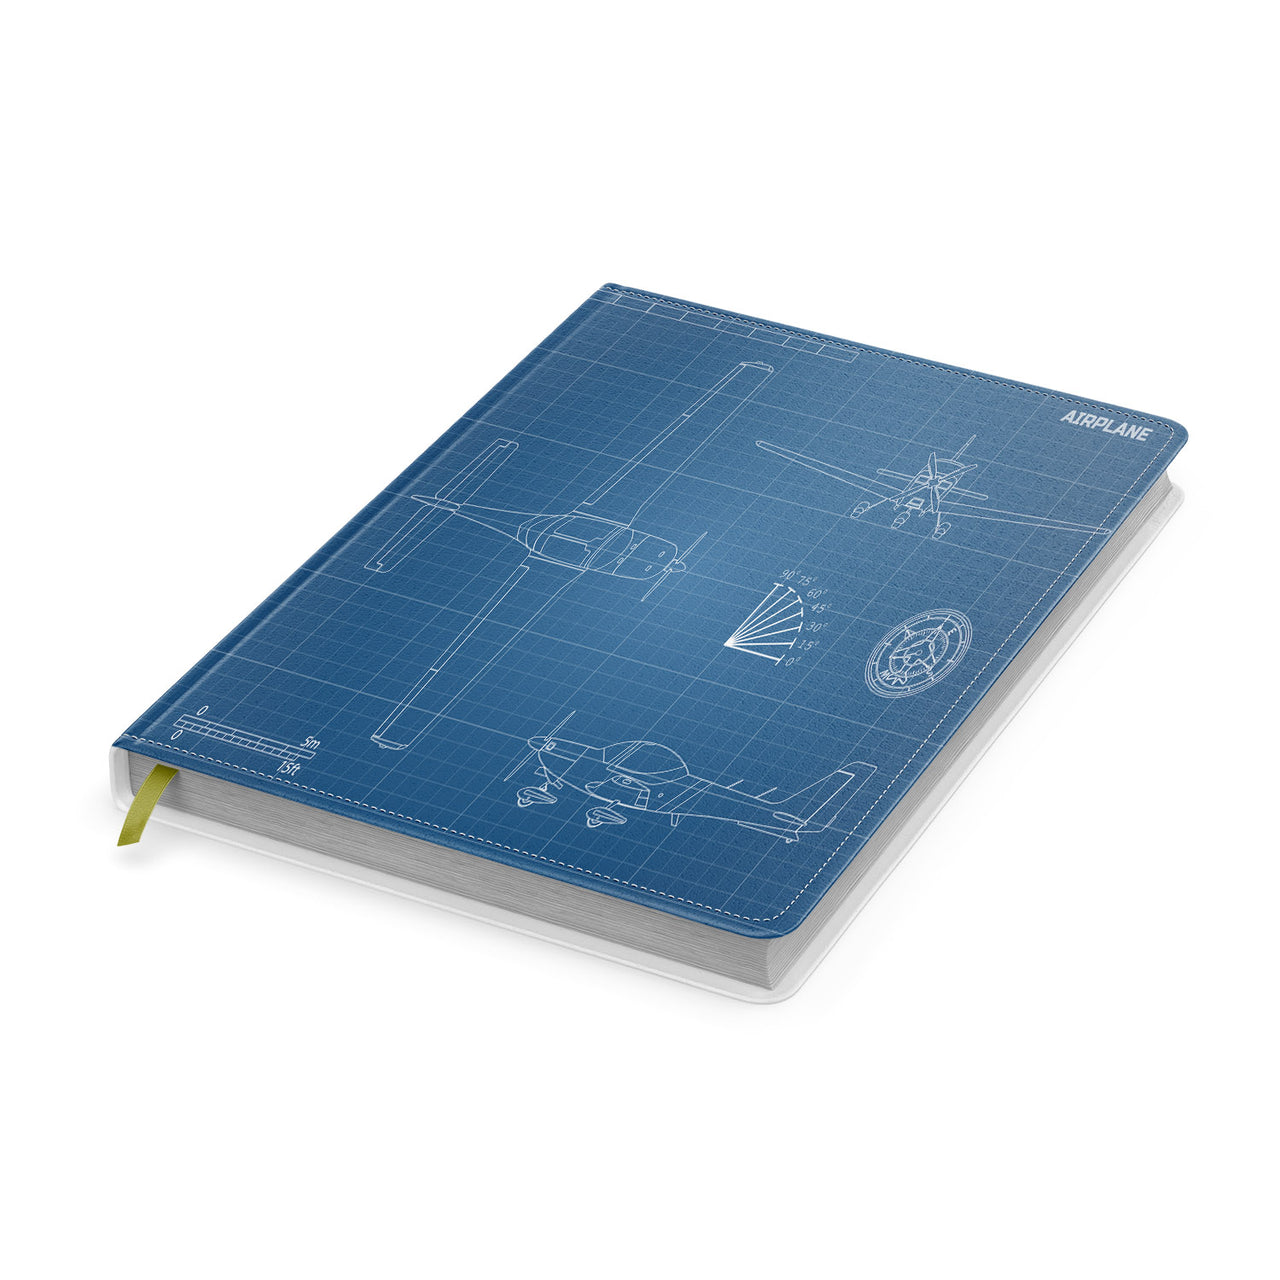 Super Propeller Details Designed Notebooks